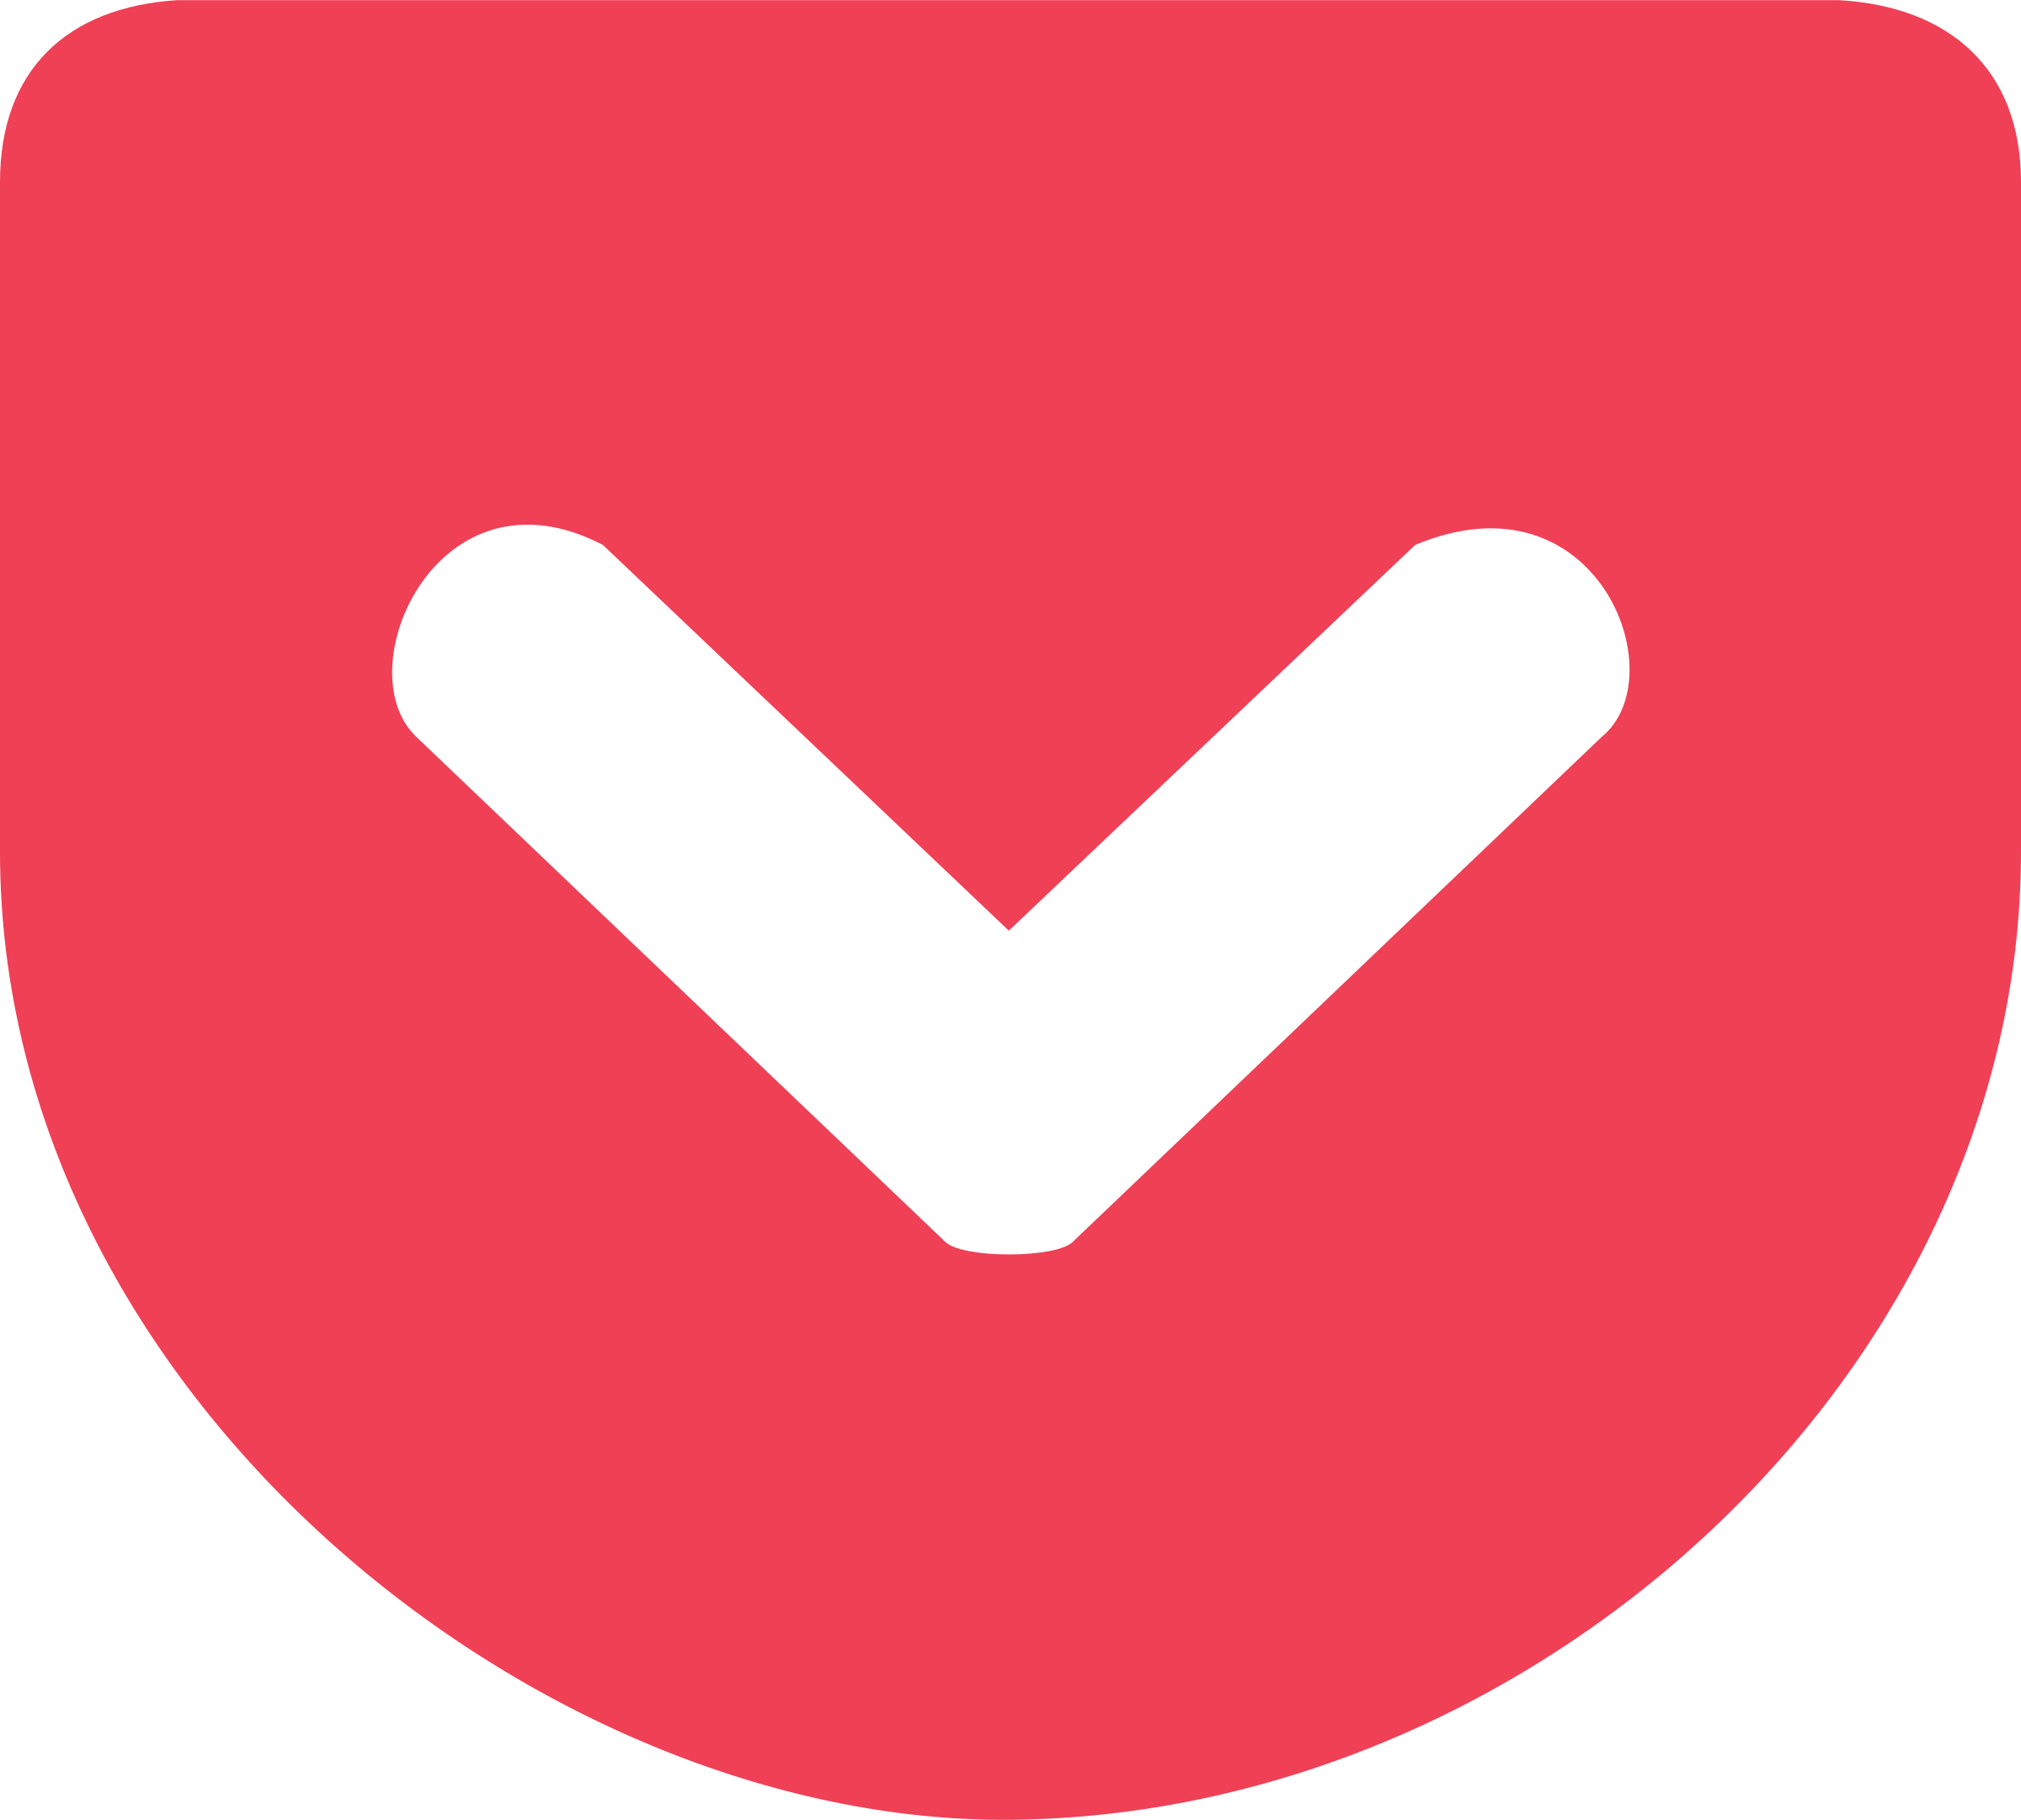 Pocket-logo-icon - Grypp